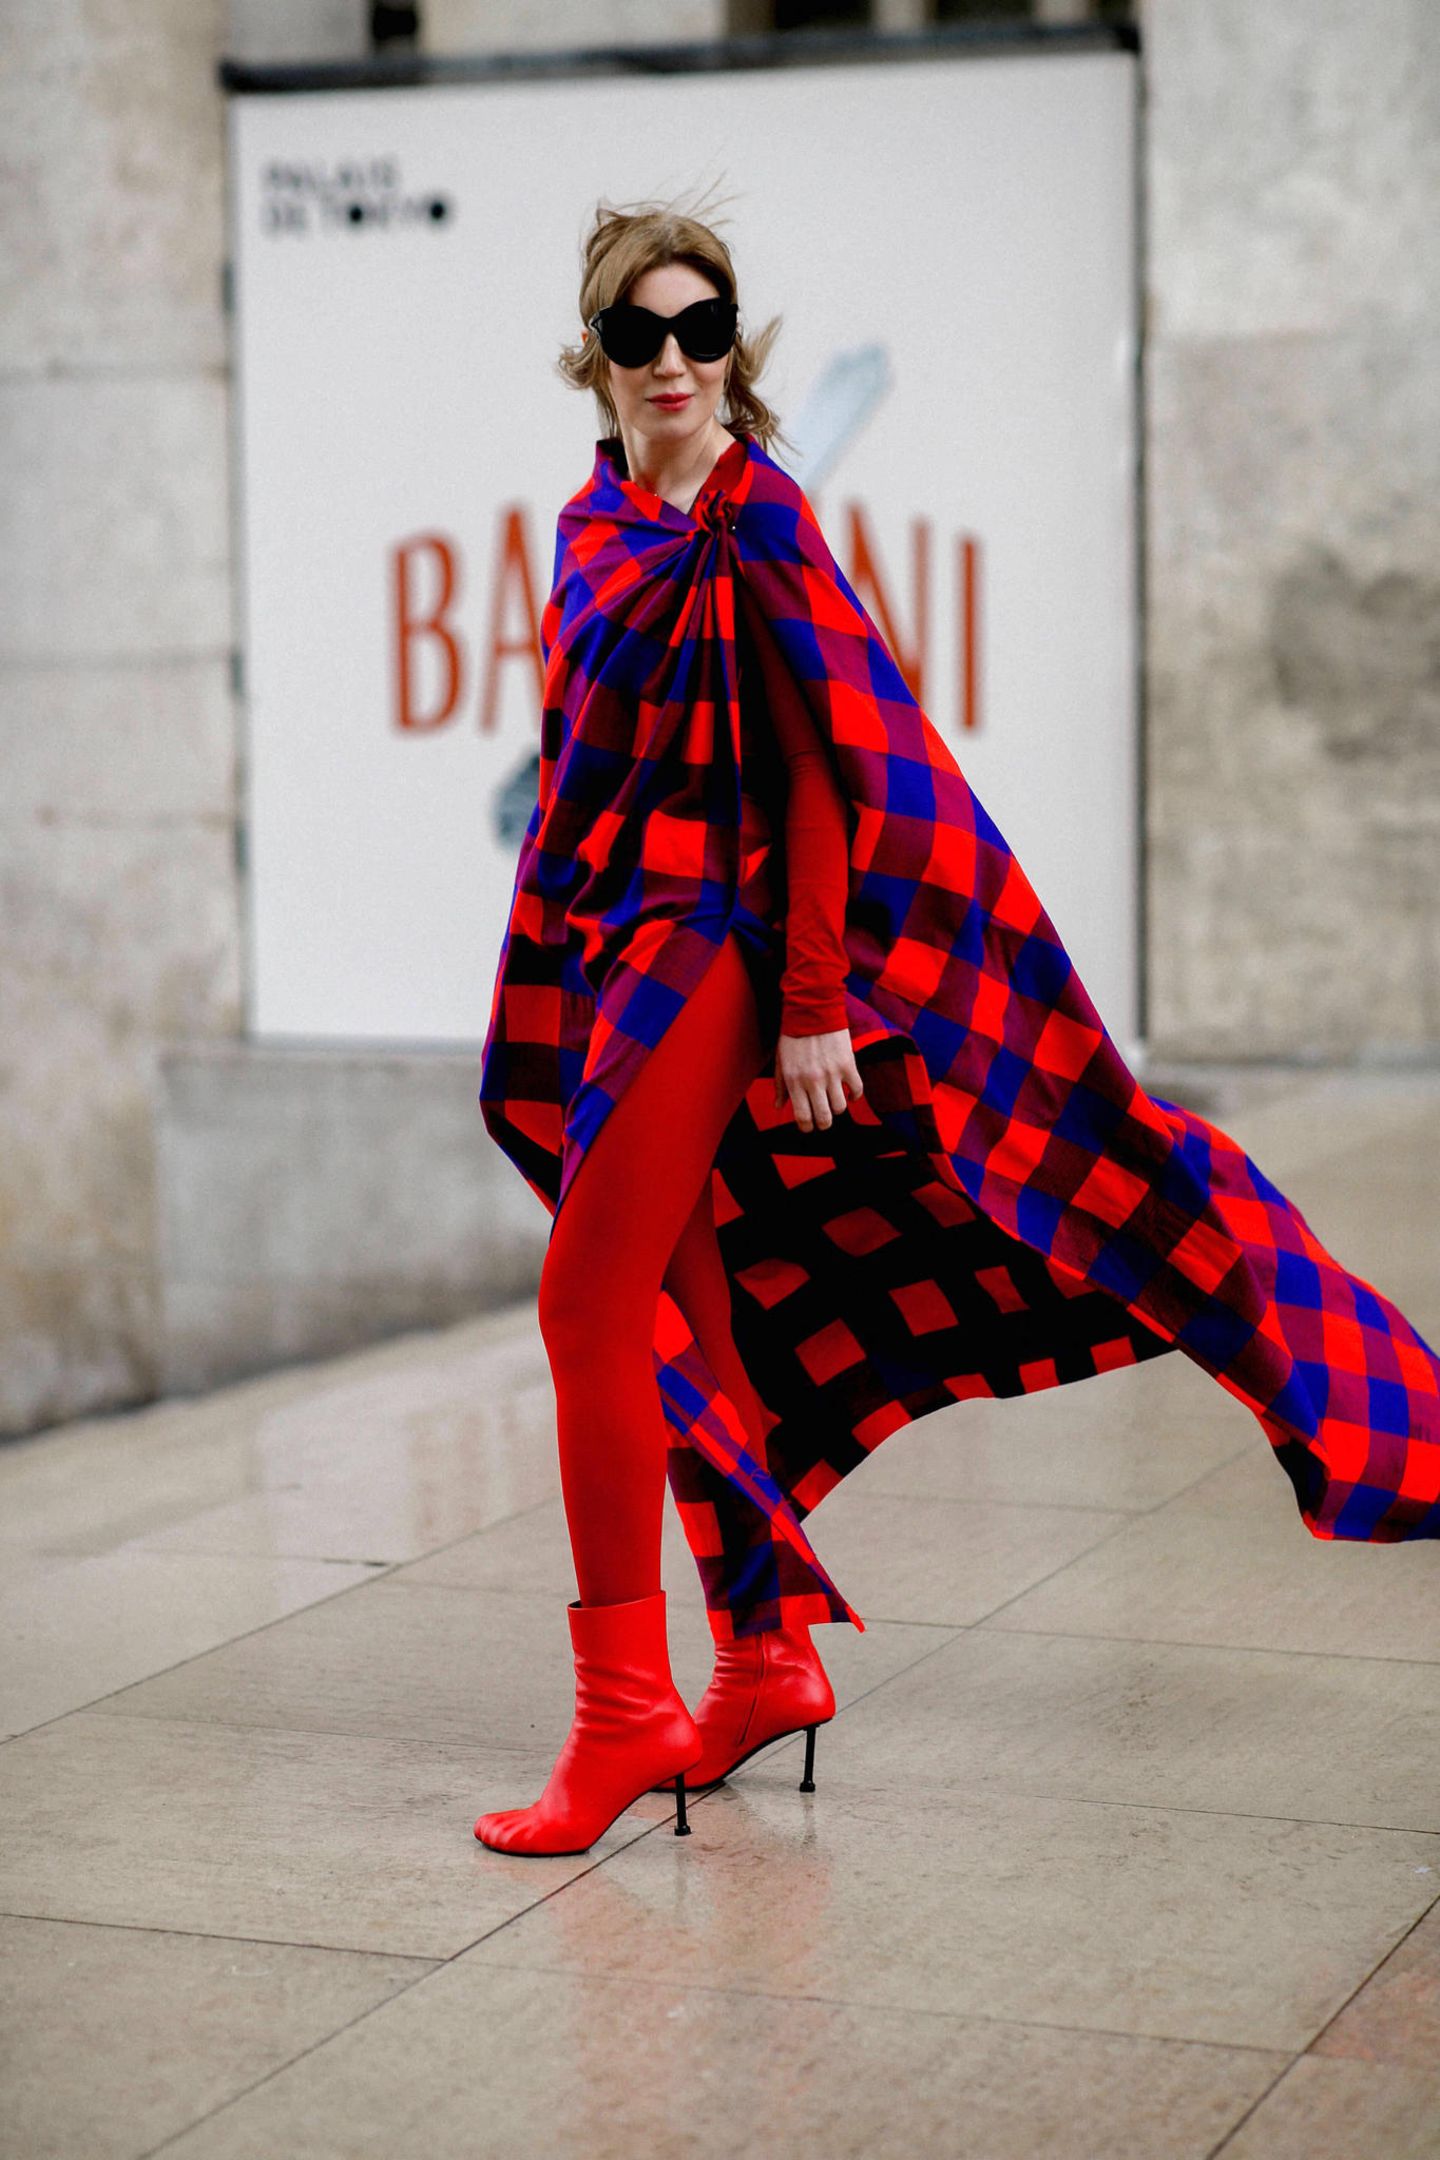 Ganz und gar nicht kleinkariert: Einen beeindruckenden Auftritt legt diese Fashion-Week-Gästin in Rot und Ultramarin hin.